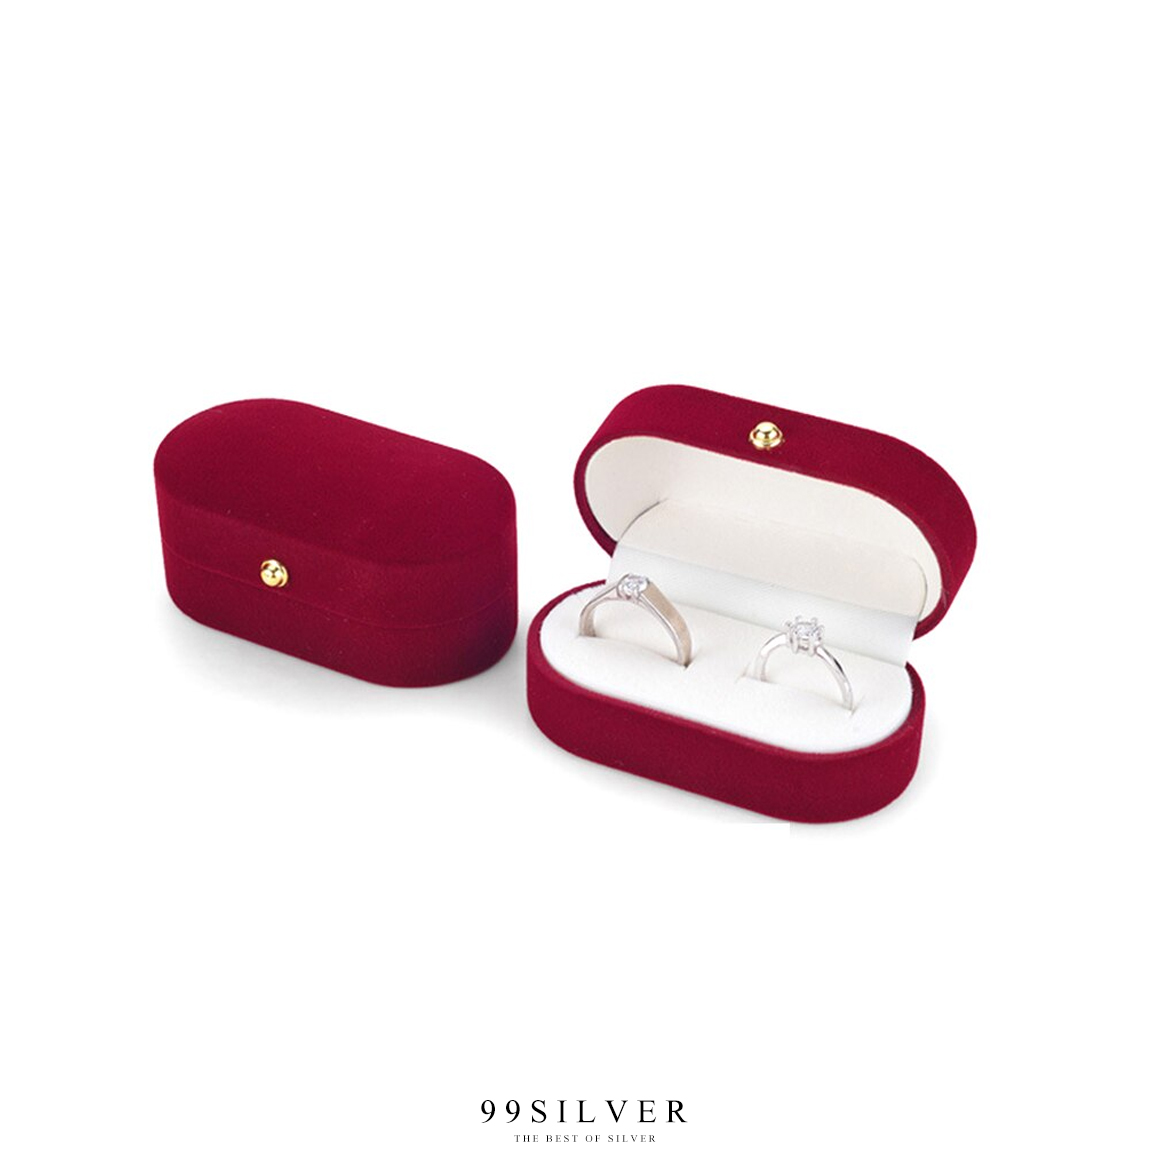 กล่องใส่แหวนกำมะหยี่สีแดงทรงโค้งยาว ฝาแข็ง ใส่แหวนได้ 2 วงเรียบหรูคลาสสิค